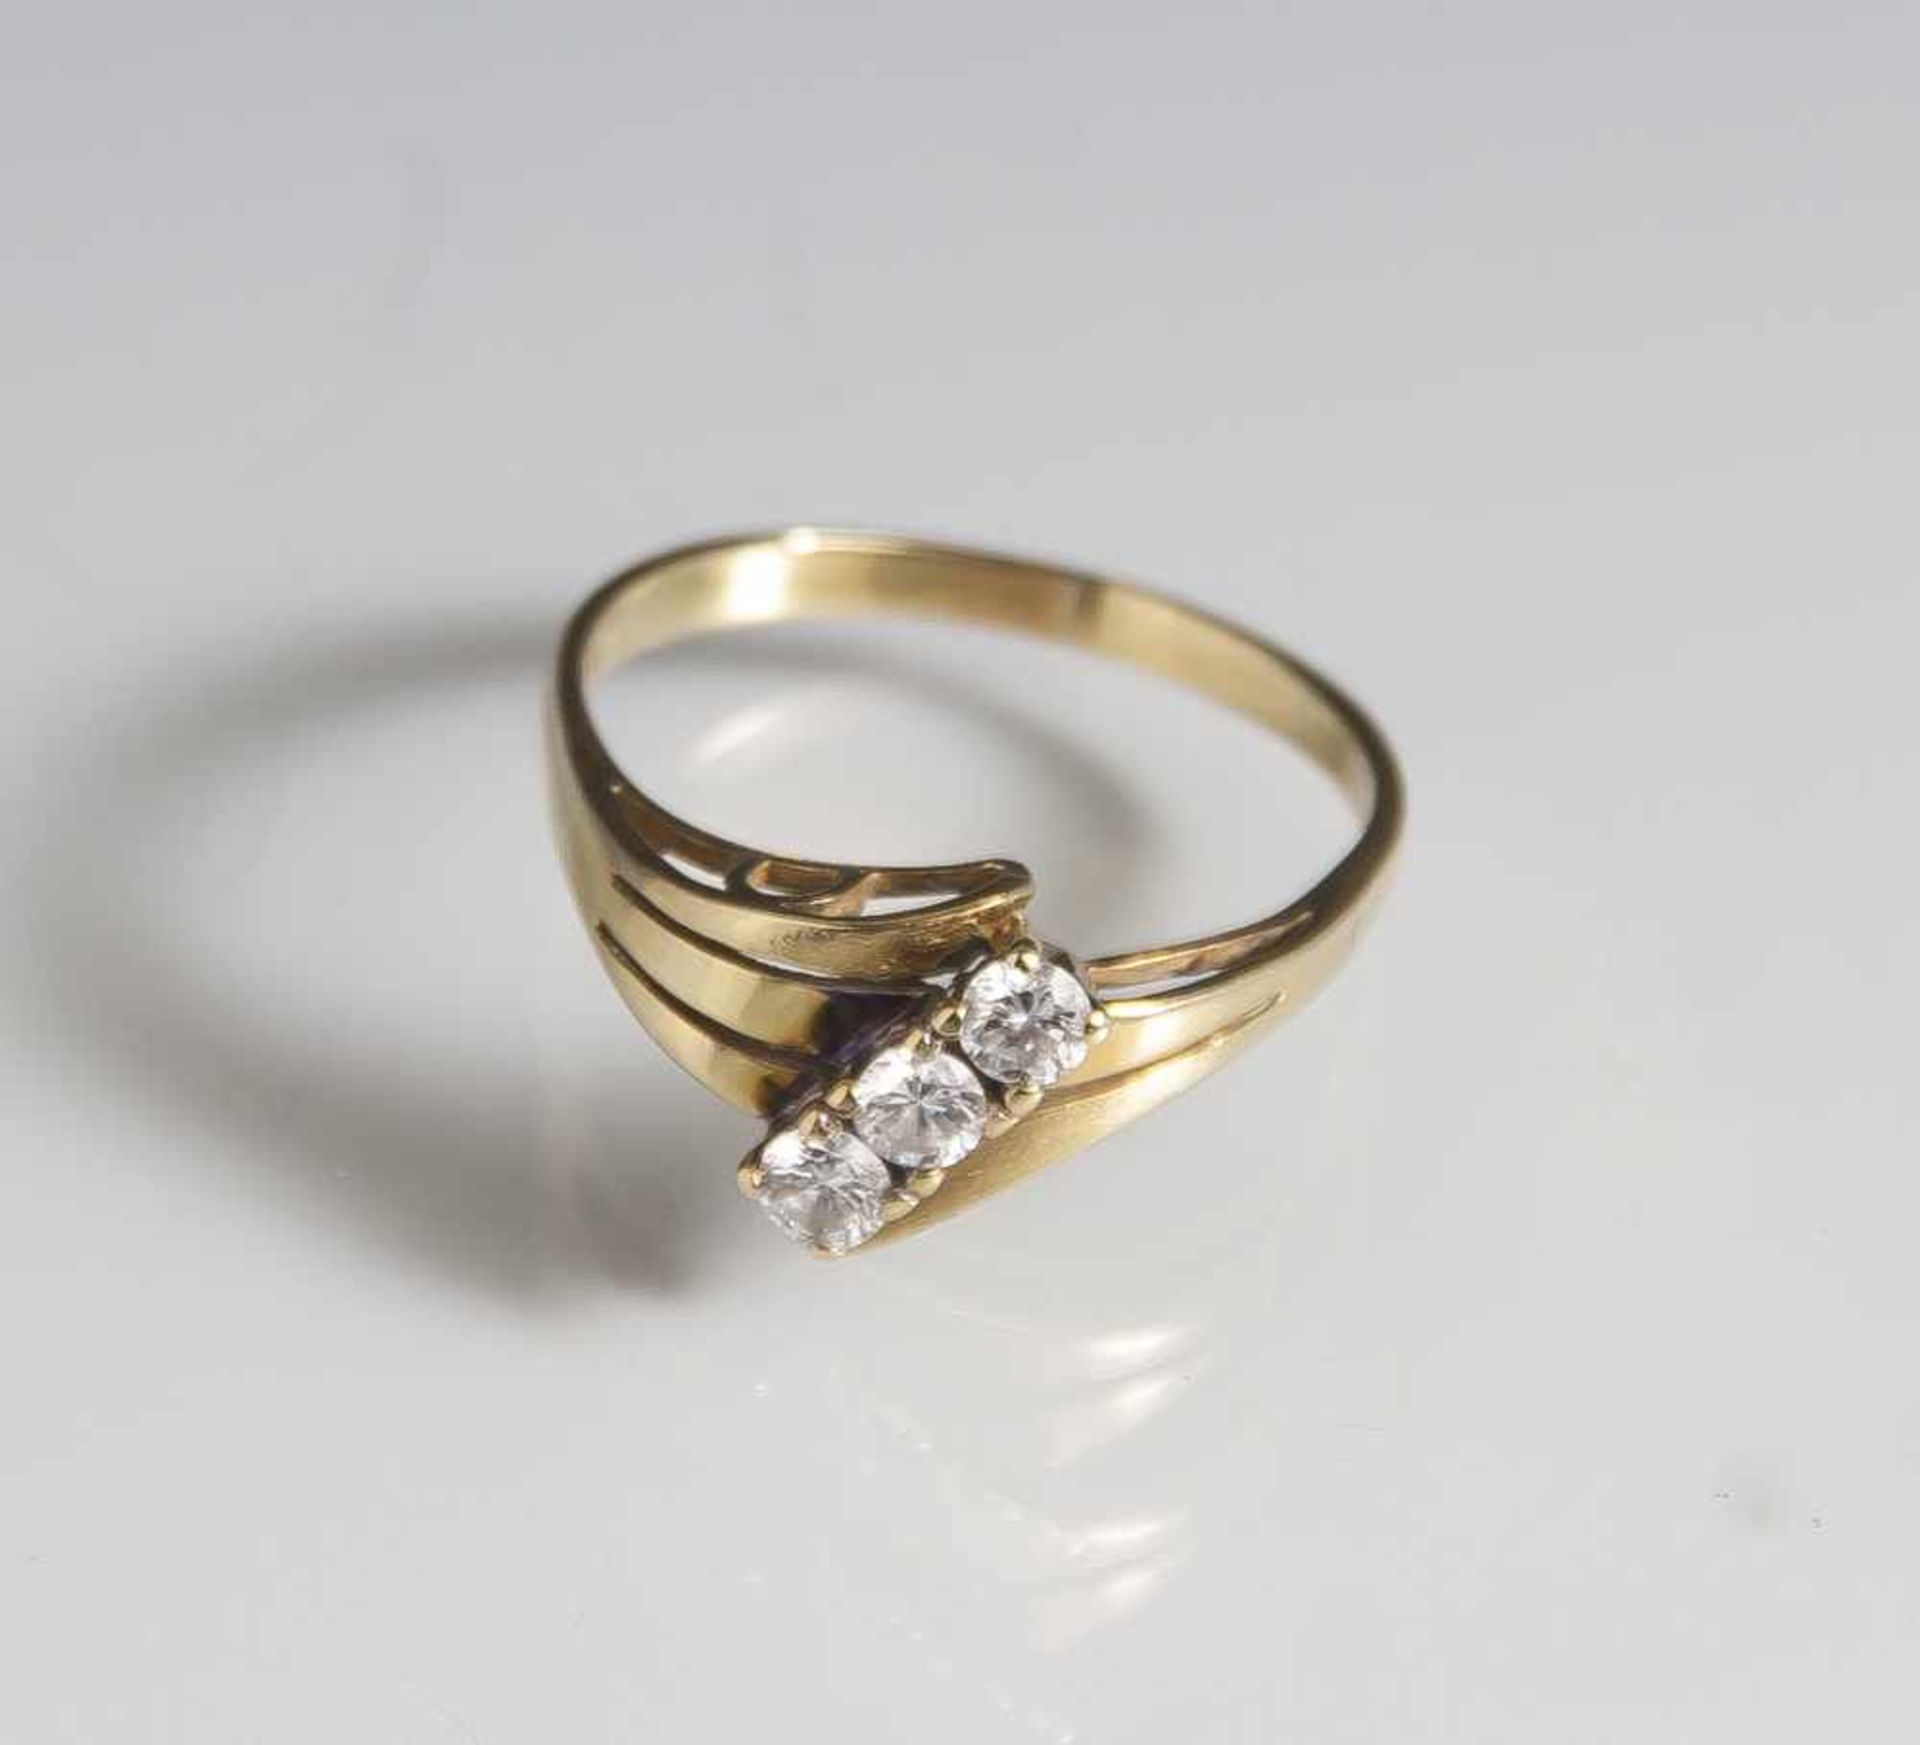 Damenring, Gelbgold 585, ausgefasst mit 3 Brillanten, ca. 0,30 ct/H/P2. Ringgröße: 59, ca.3 gr. (